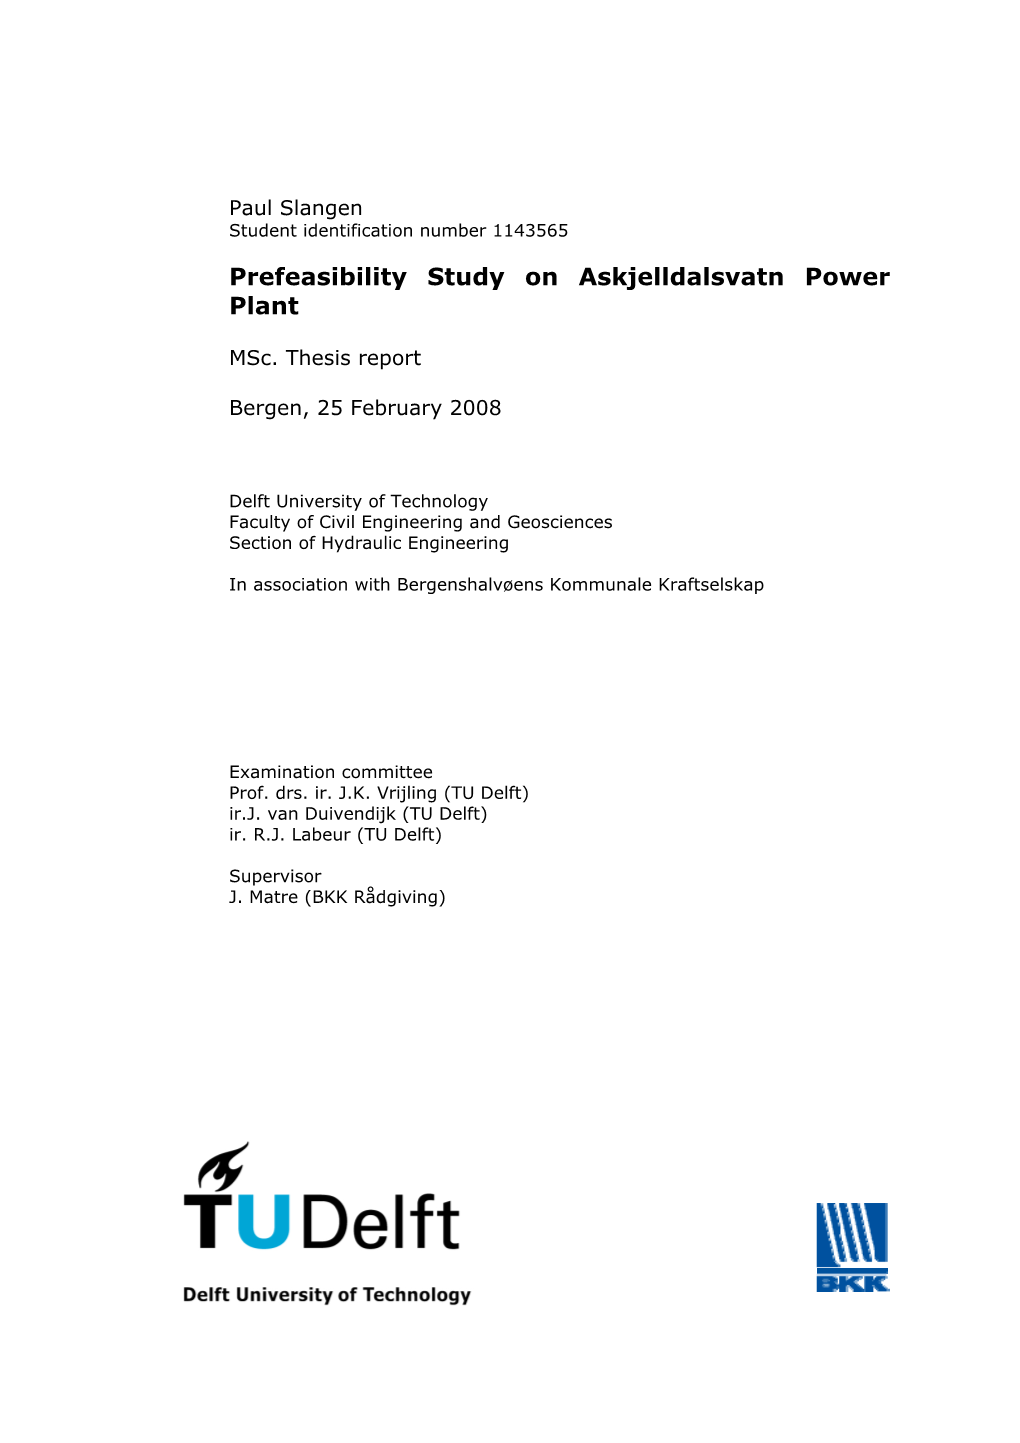 Prefeasibility Study on Askjelldalsvatn Power Plant